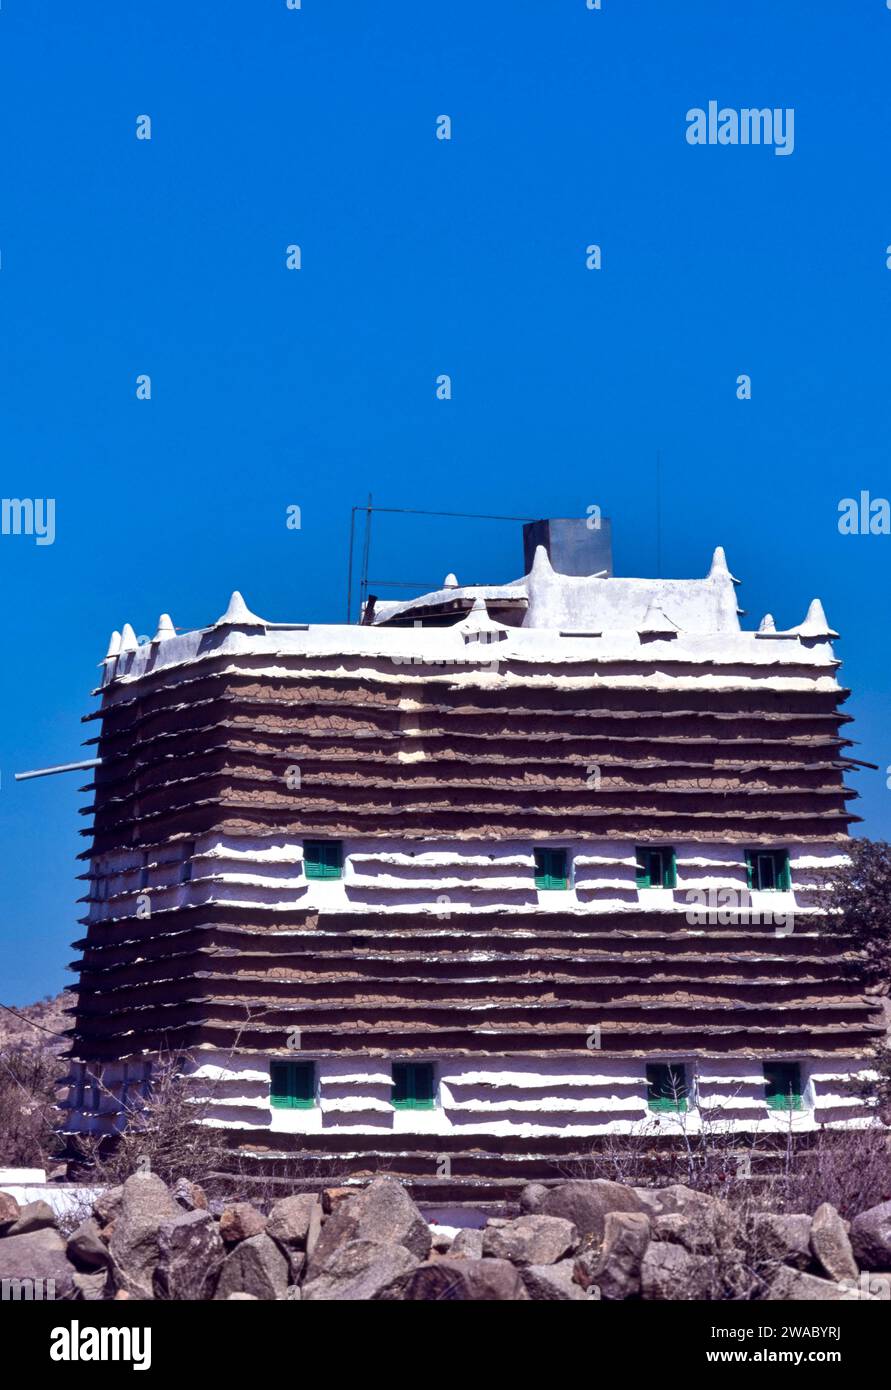 Ciel bleu d'Arabie Saoudite au-dessus d'une vieille maison de village rural muré de boue typique avec de petites fenêtres et des volets verts Banque D'Images